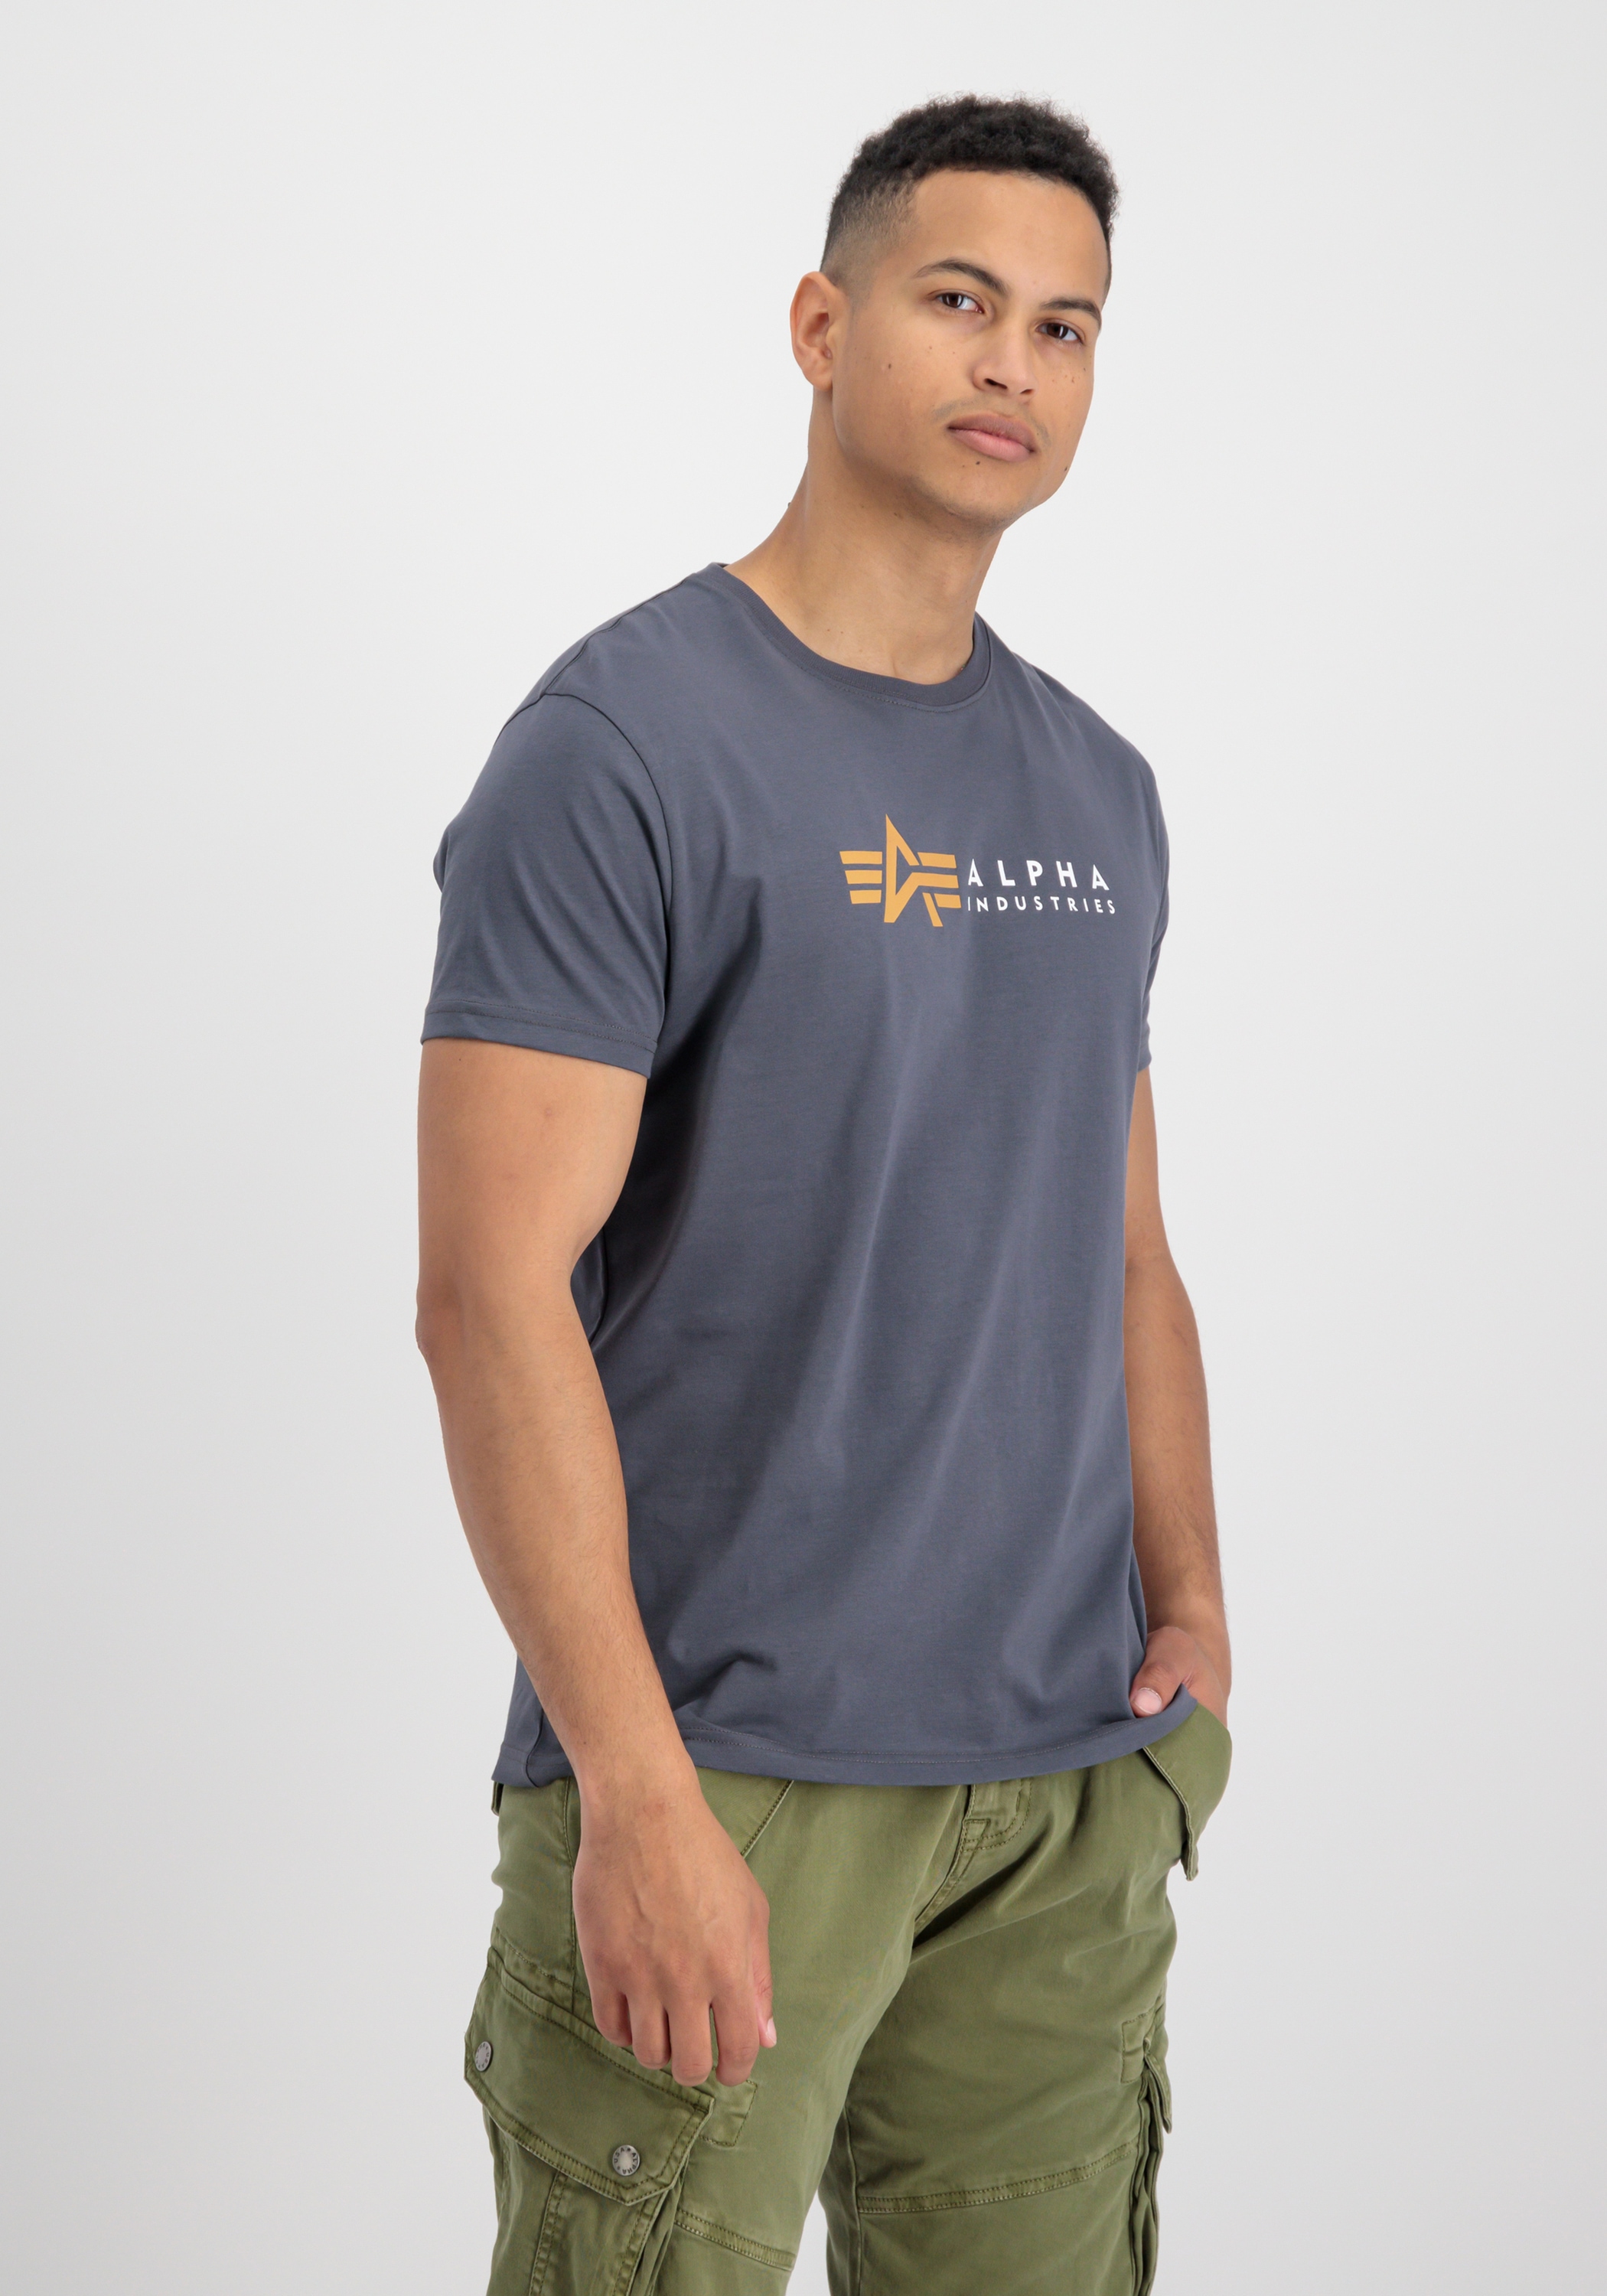 Alpha »Alpha ♕ Industries T« bei T-Shirts Industries T-Shirt Alpha Men - Label